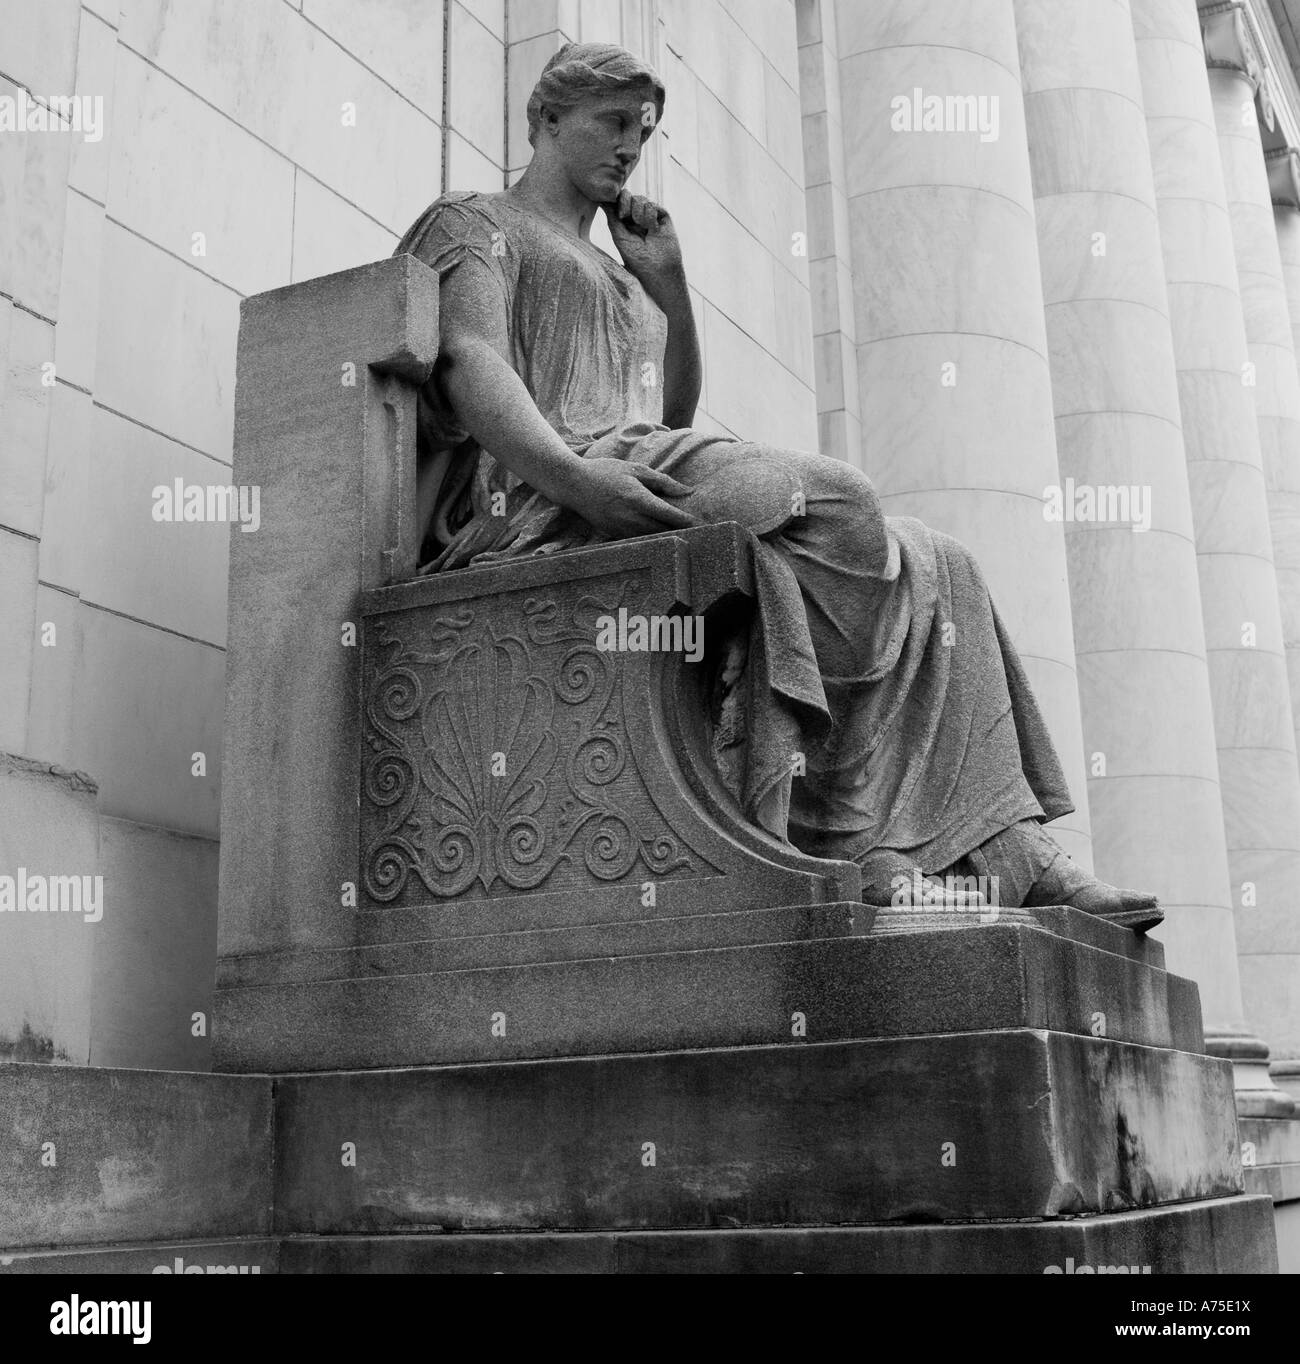 Style classique d'une statue grecque ou romaine assis figure à l'extérieur de la Bibliothèque publique de New Haven, CT USA Banque D'Images